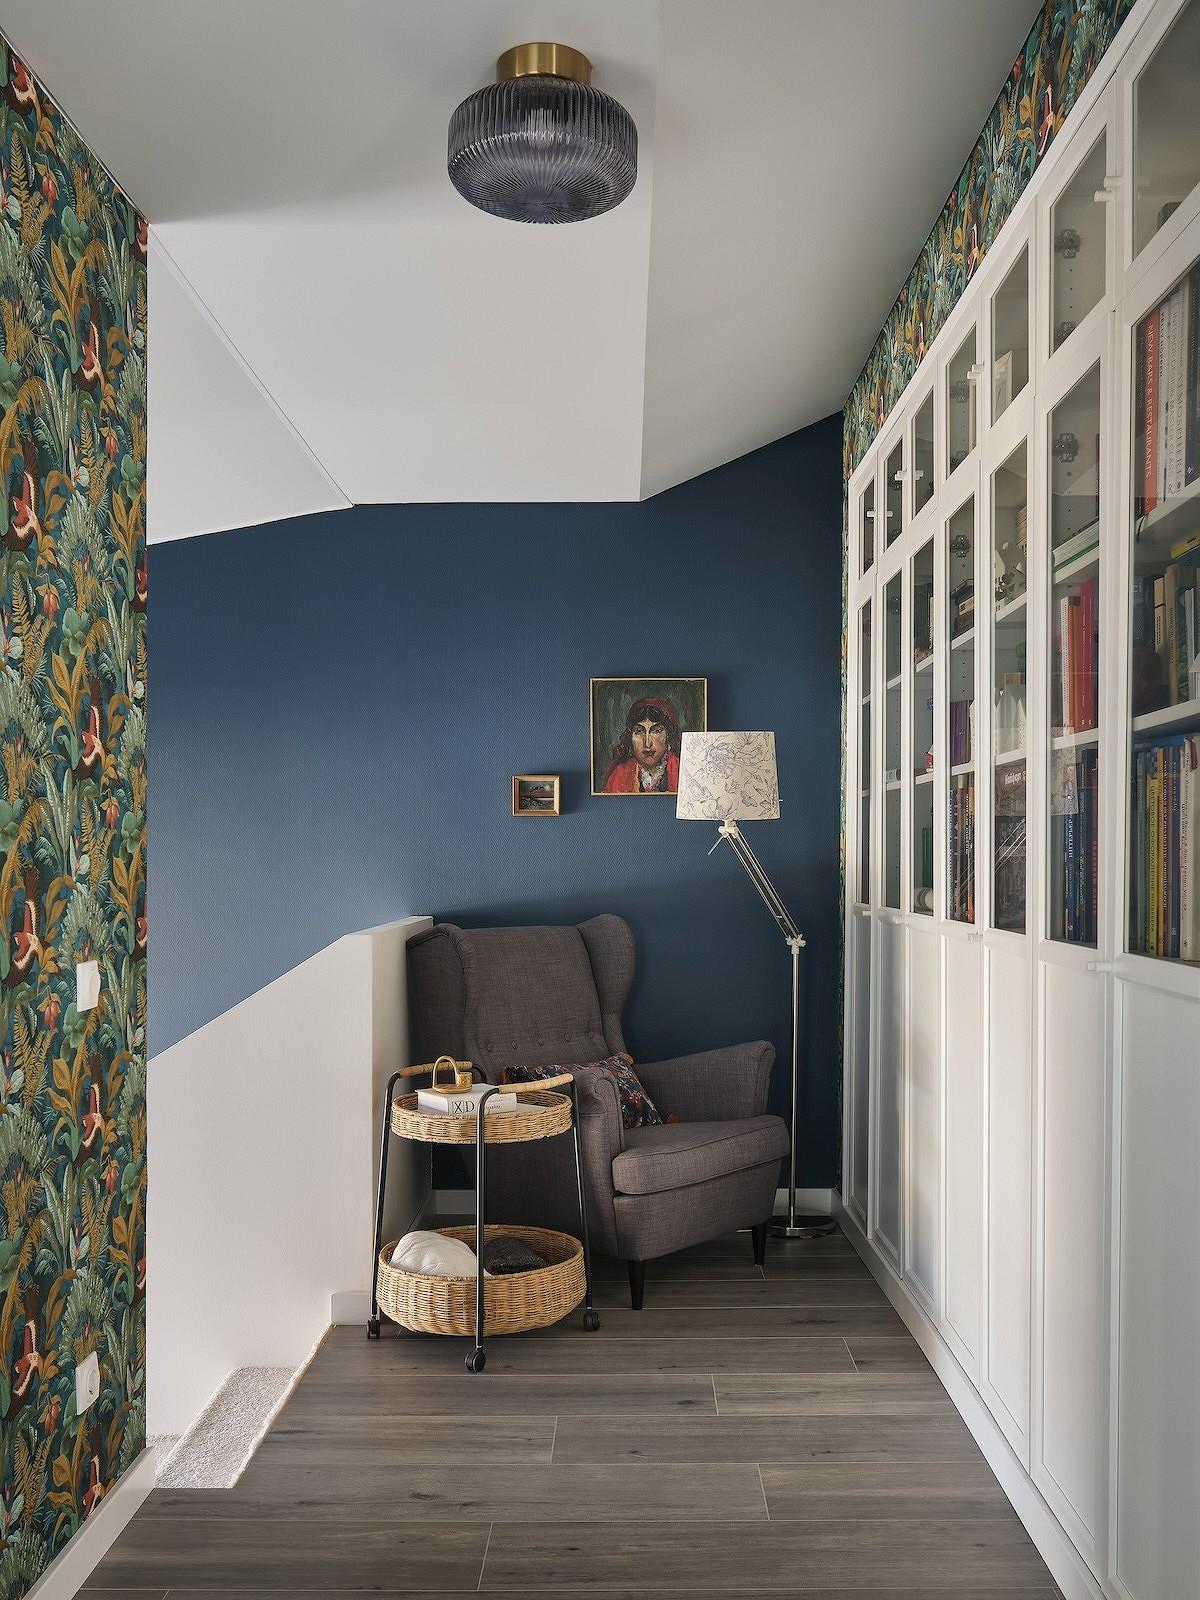 Скандинавский стиль по-сибирски: светлые стены, уютные обои, бабушкин комод. Дом для семьи дизайнера с тремя детьми30